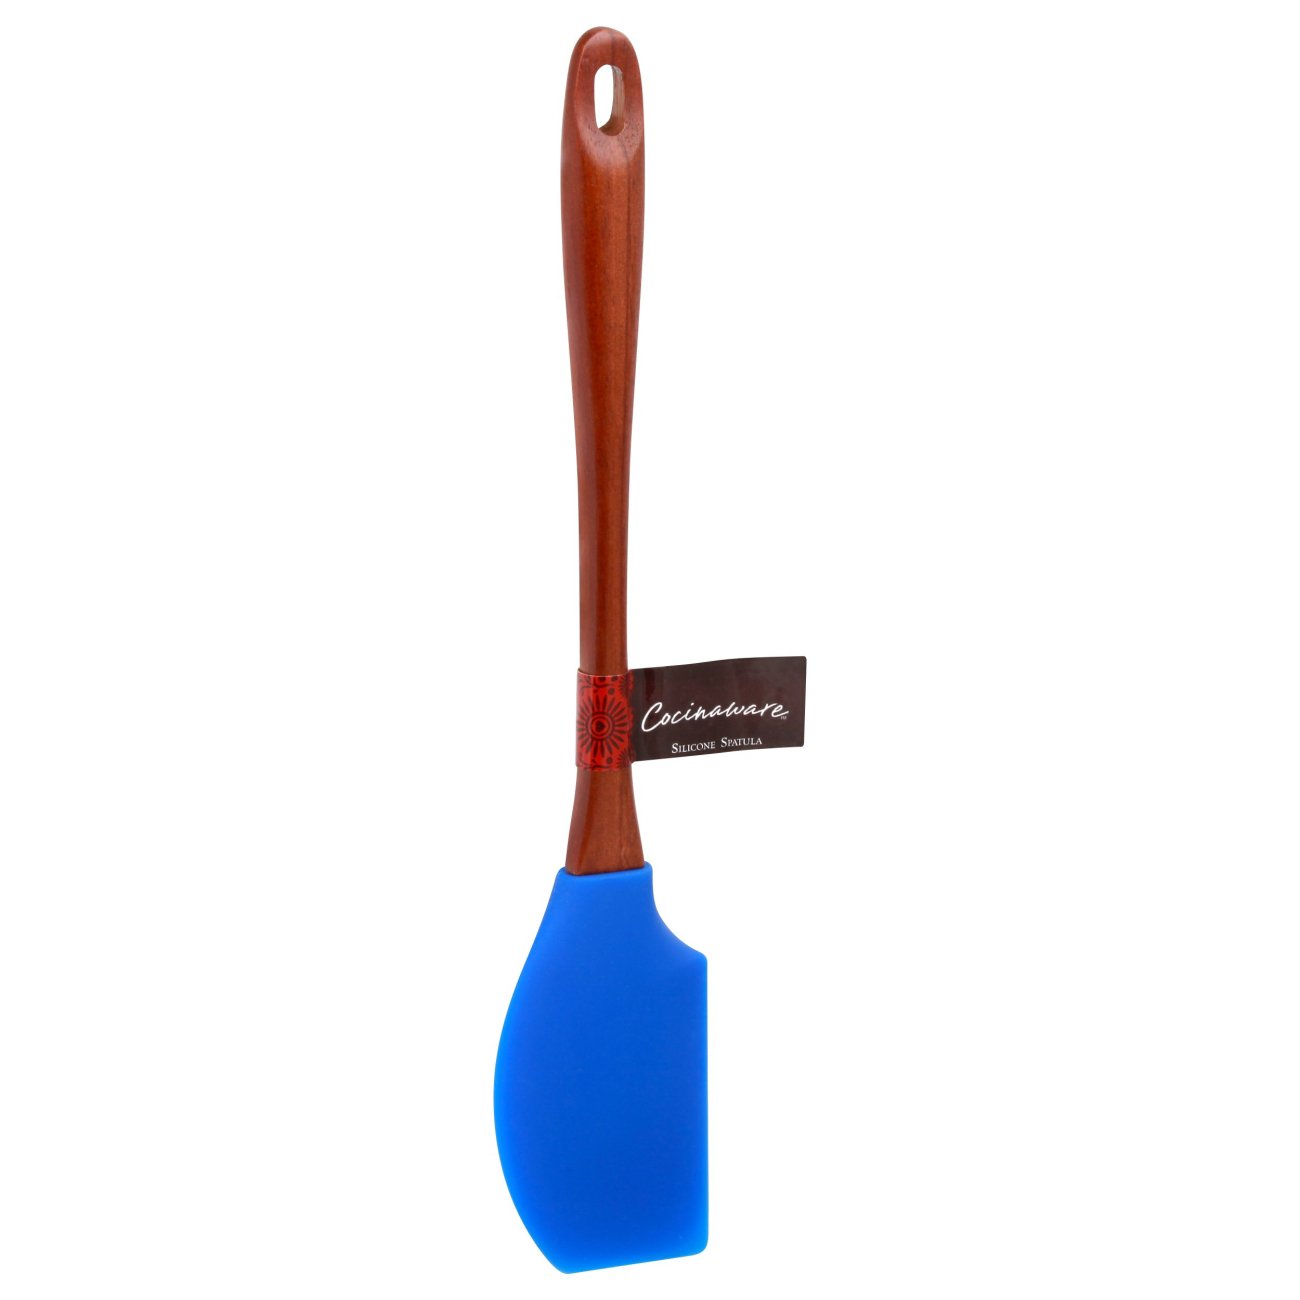 blue silicone spatula